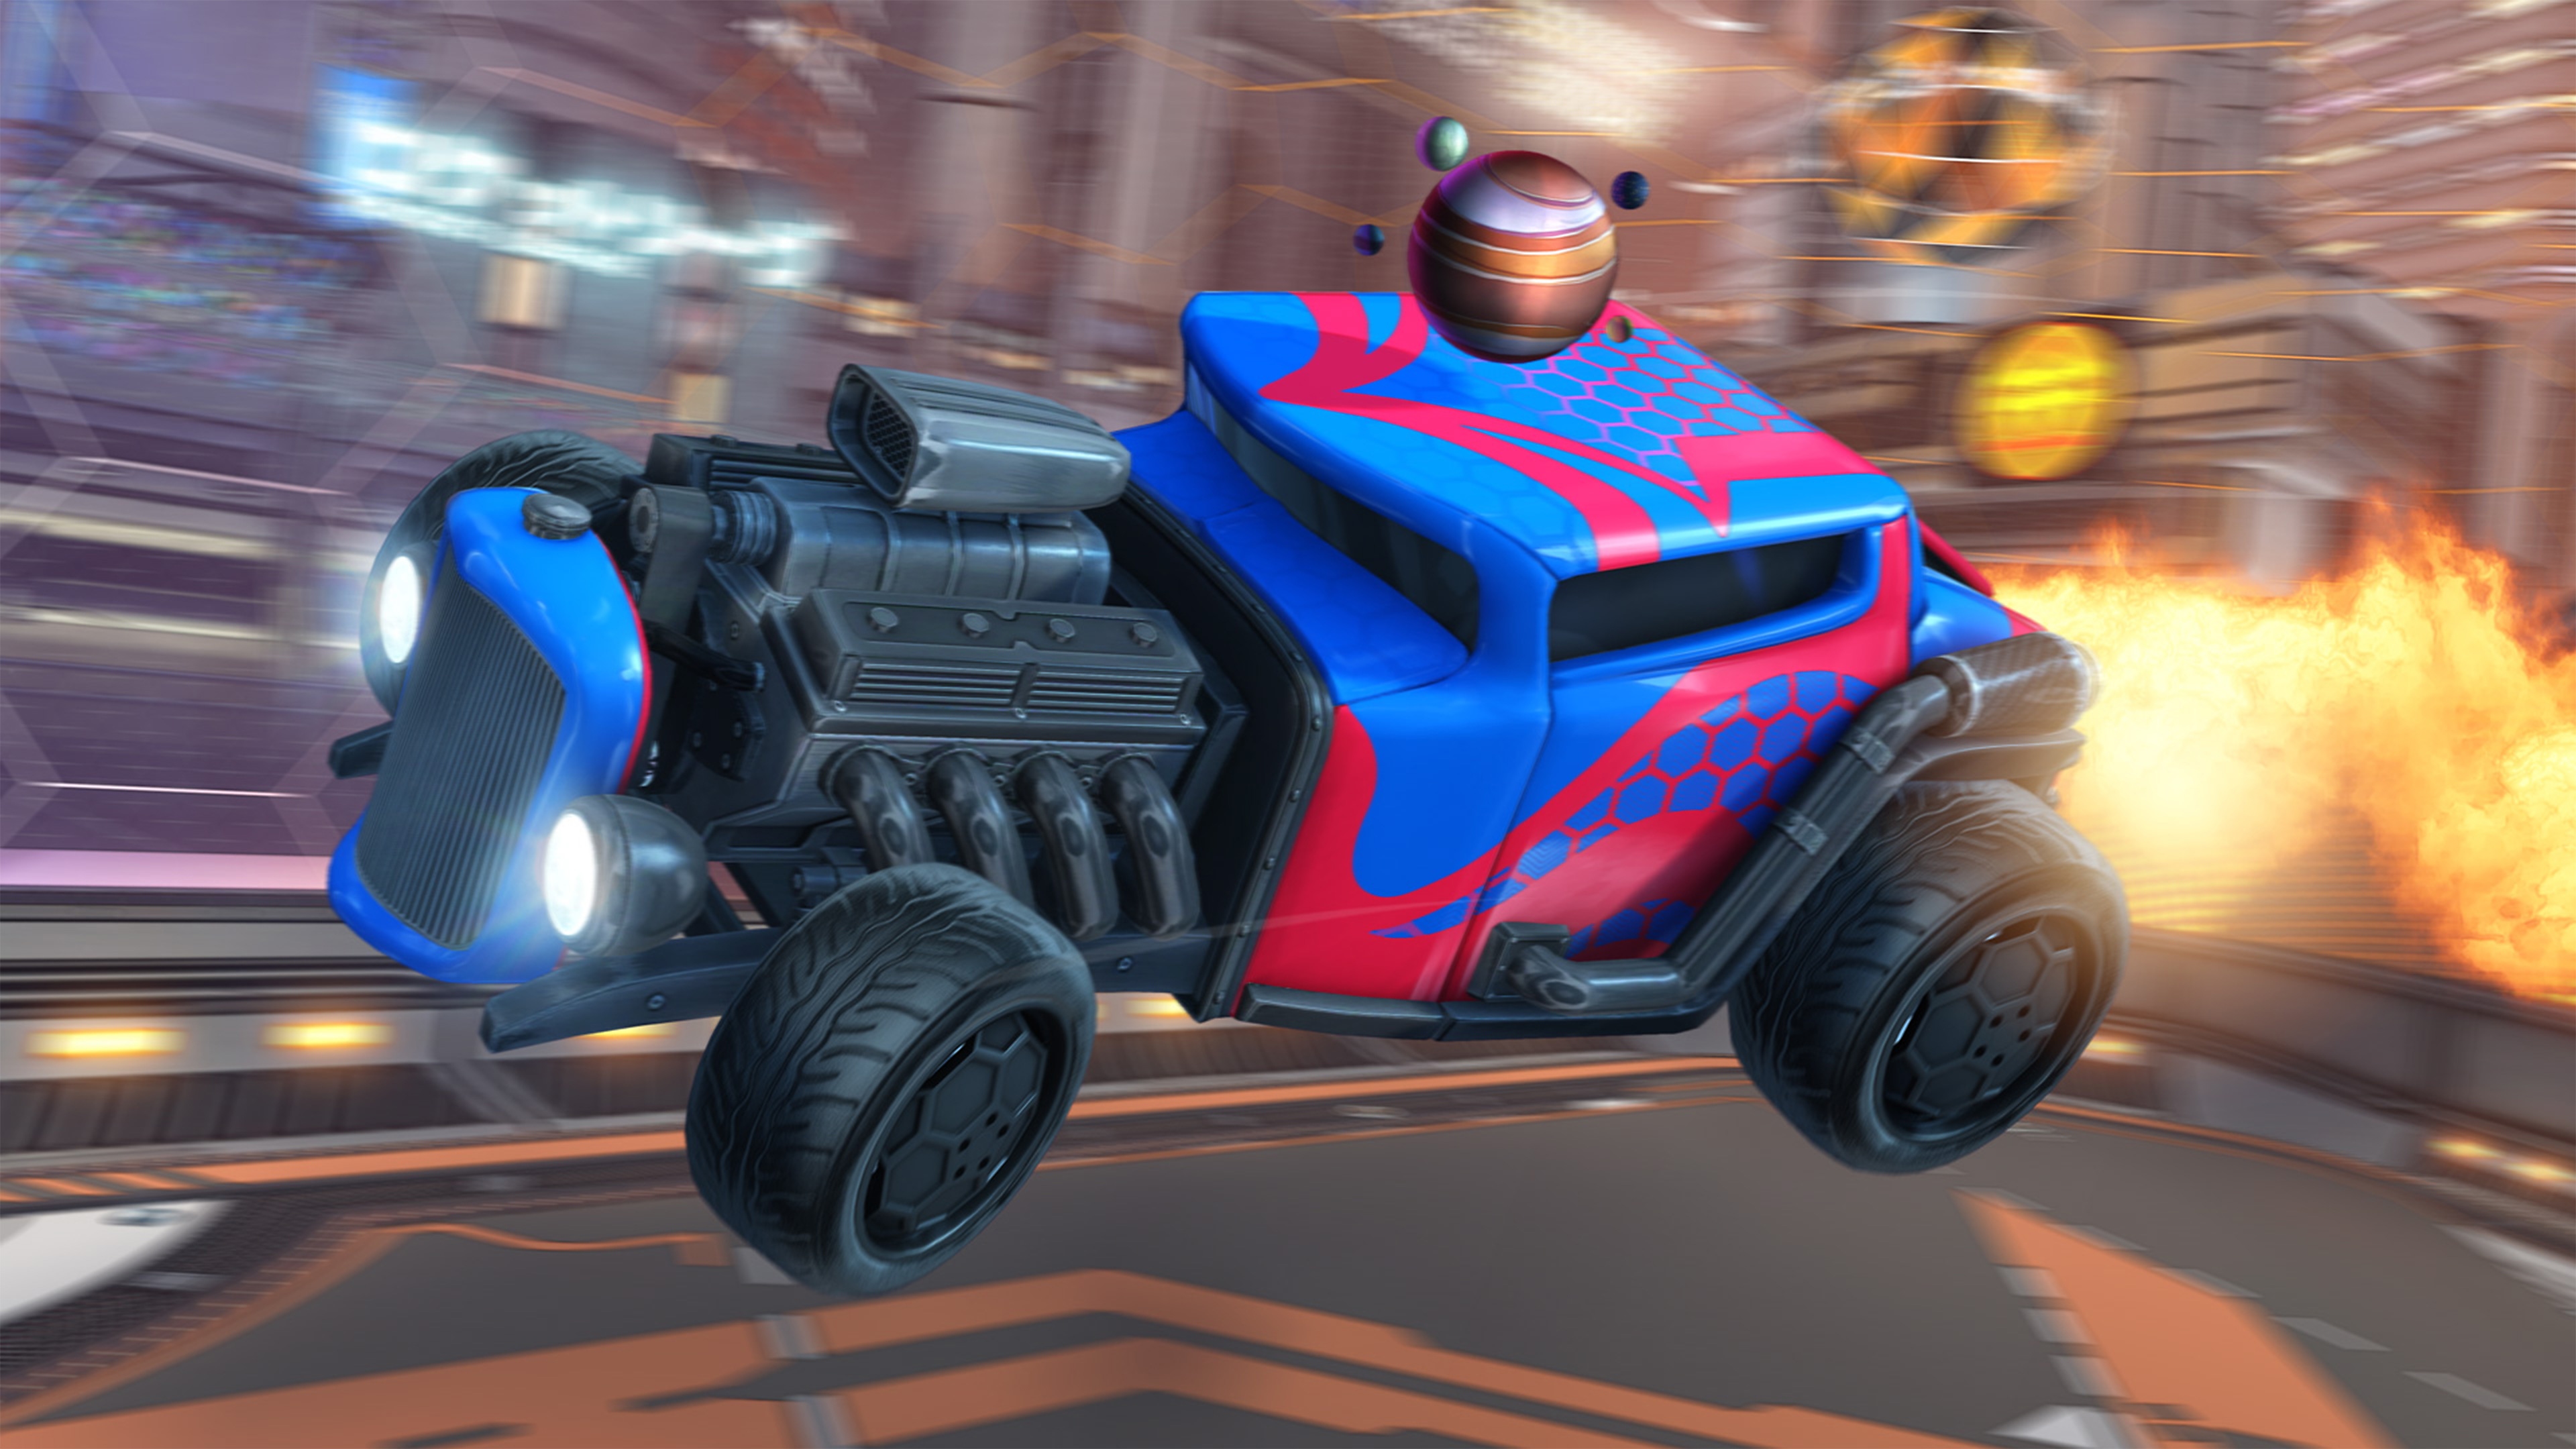 Captura de pantalla de Rocket League que muestra un auto estilo hot rod con el motor expuesto y pintura rojo con azul